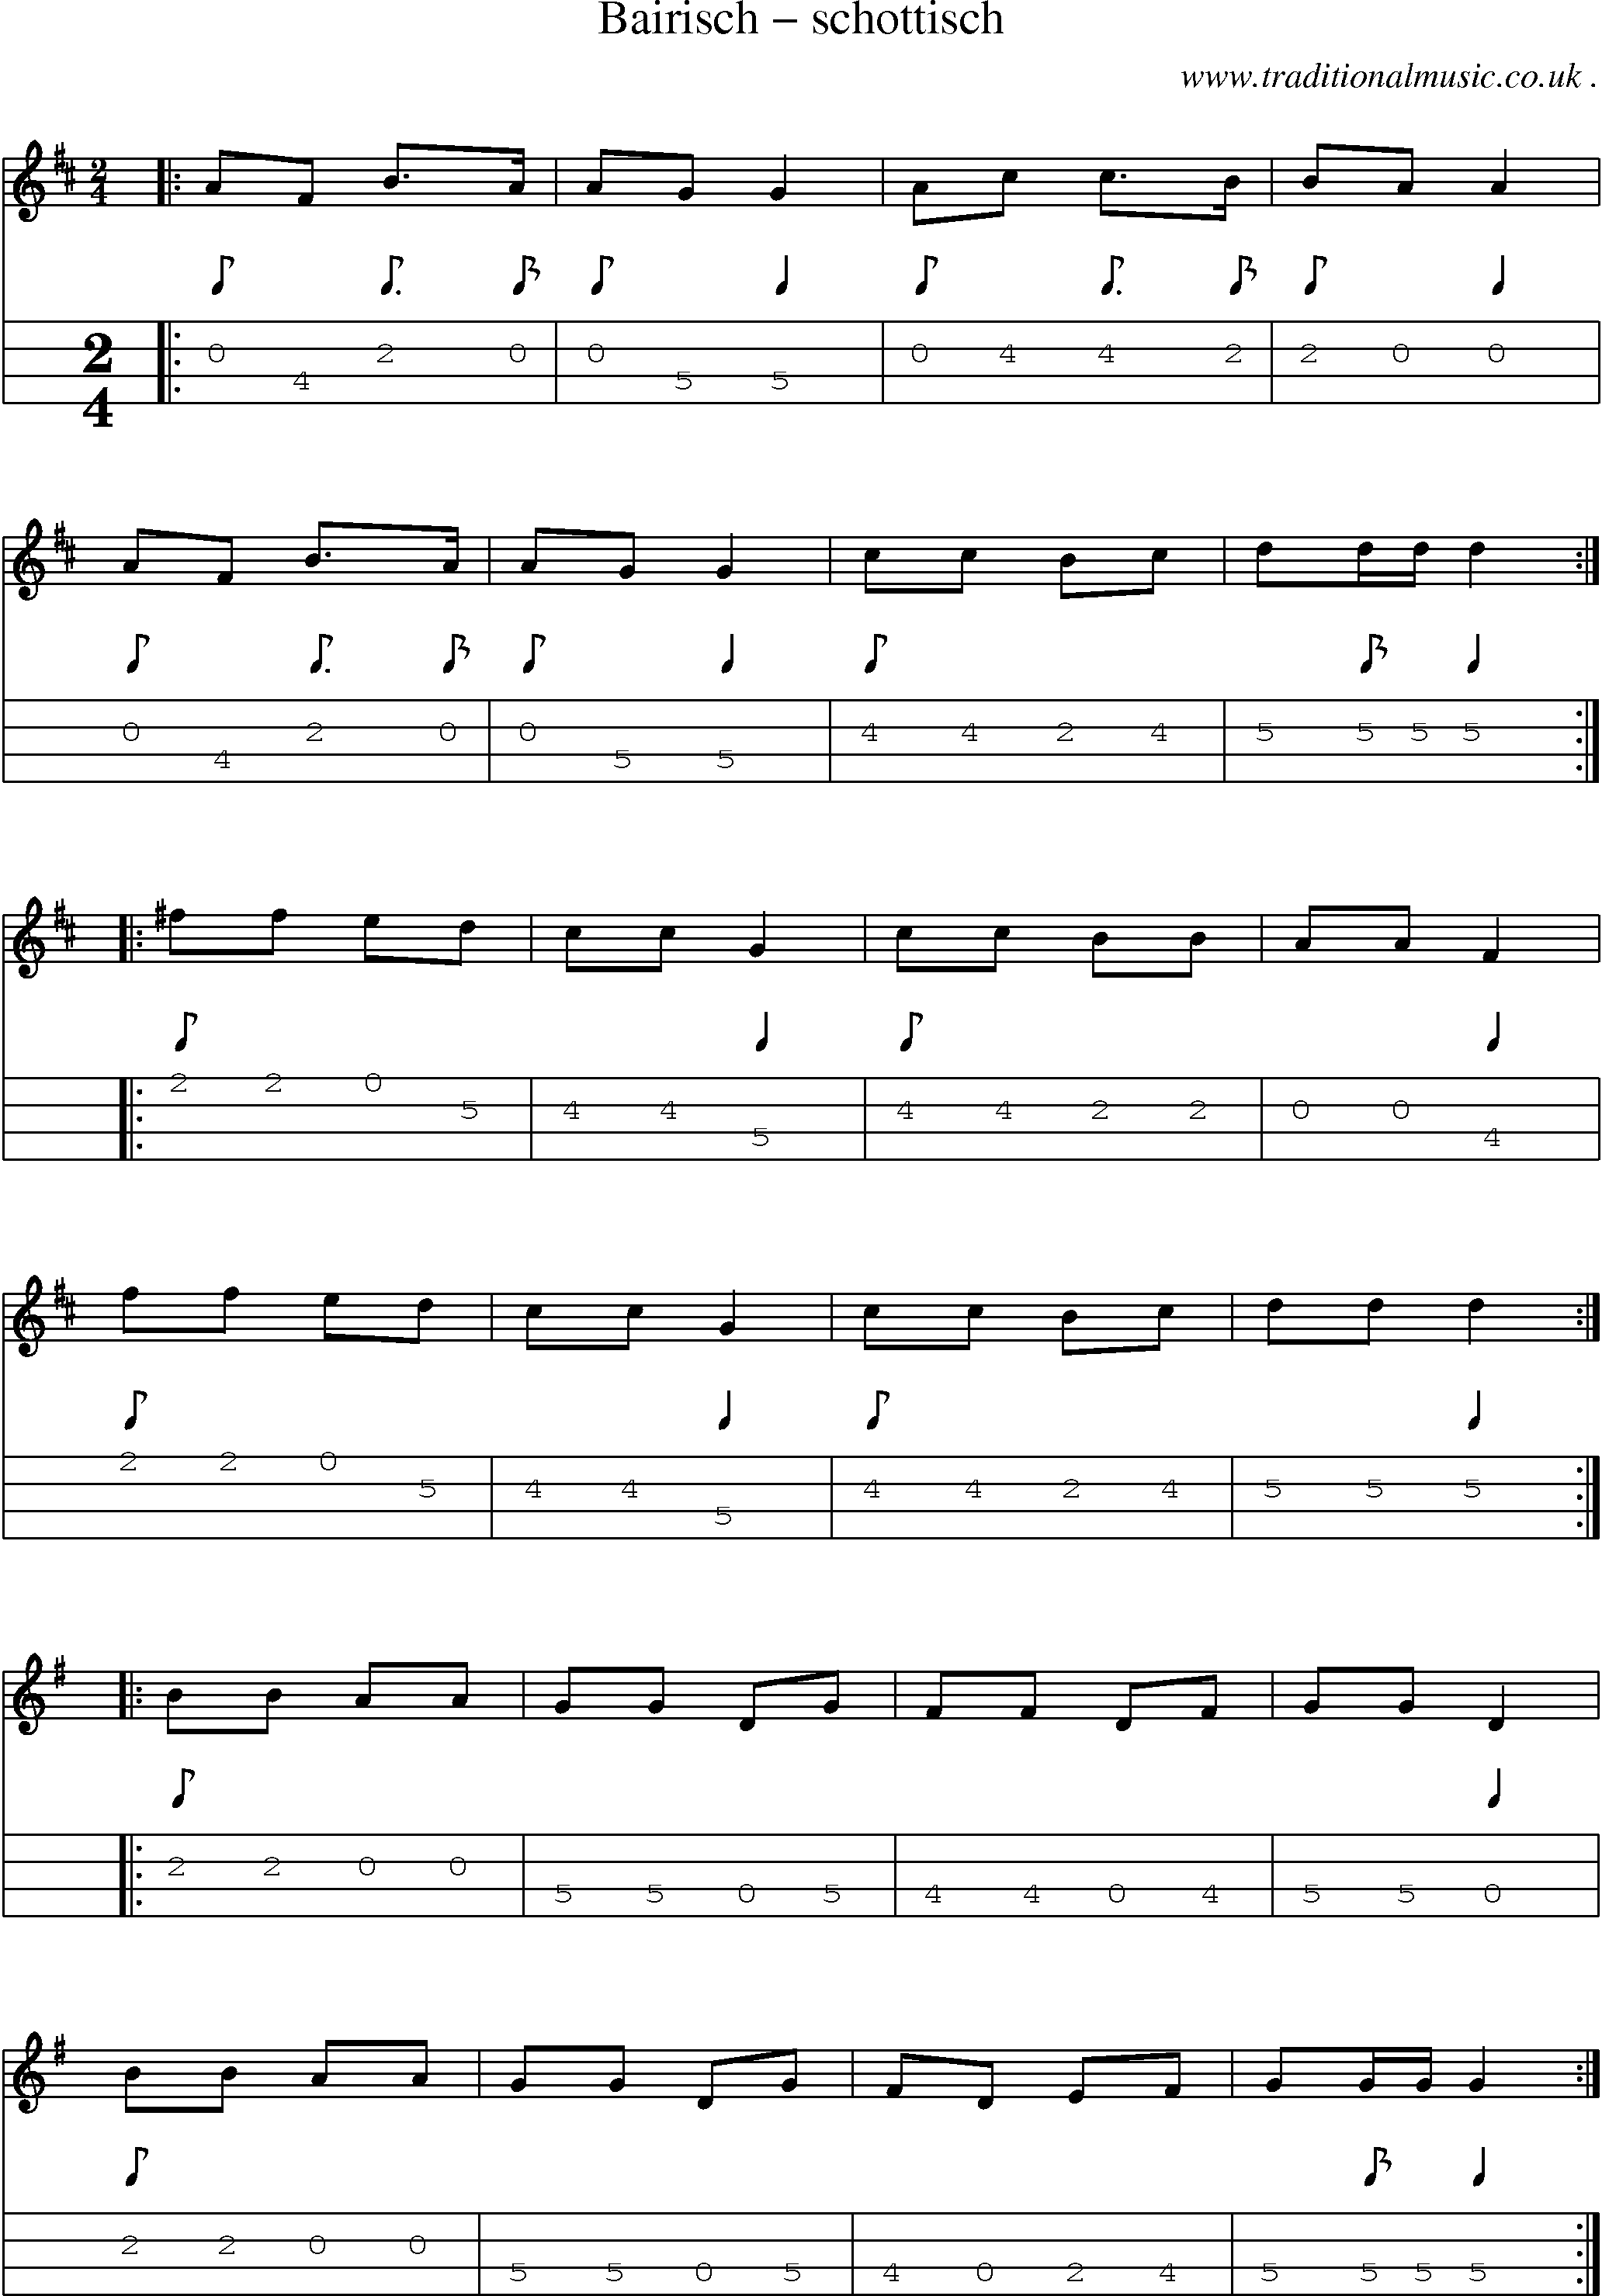 Sheet-Music and Mandolin Tabs for Bairisch Schottisch